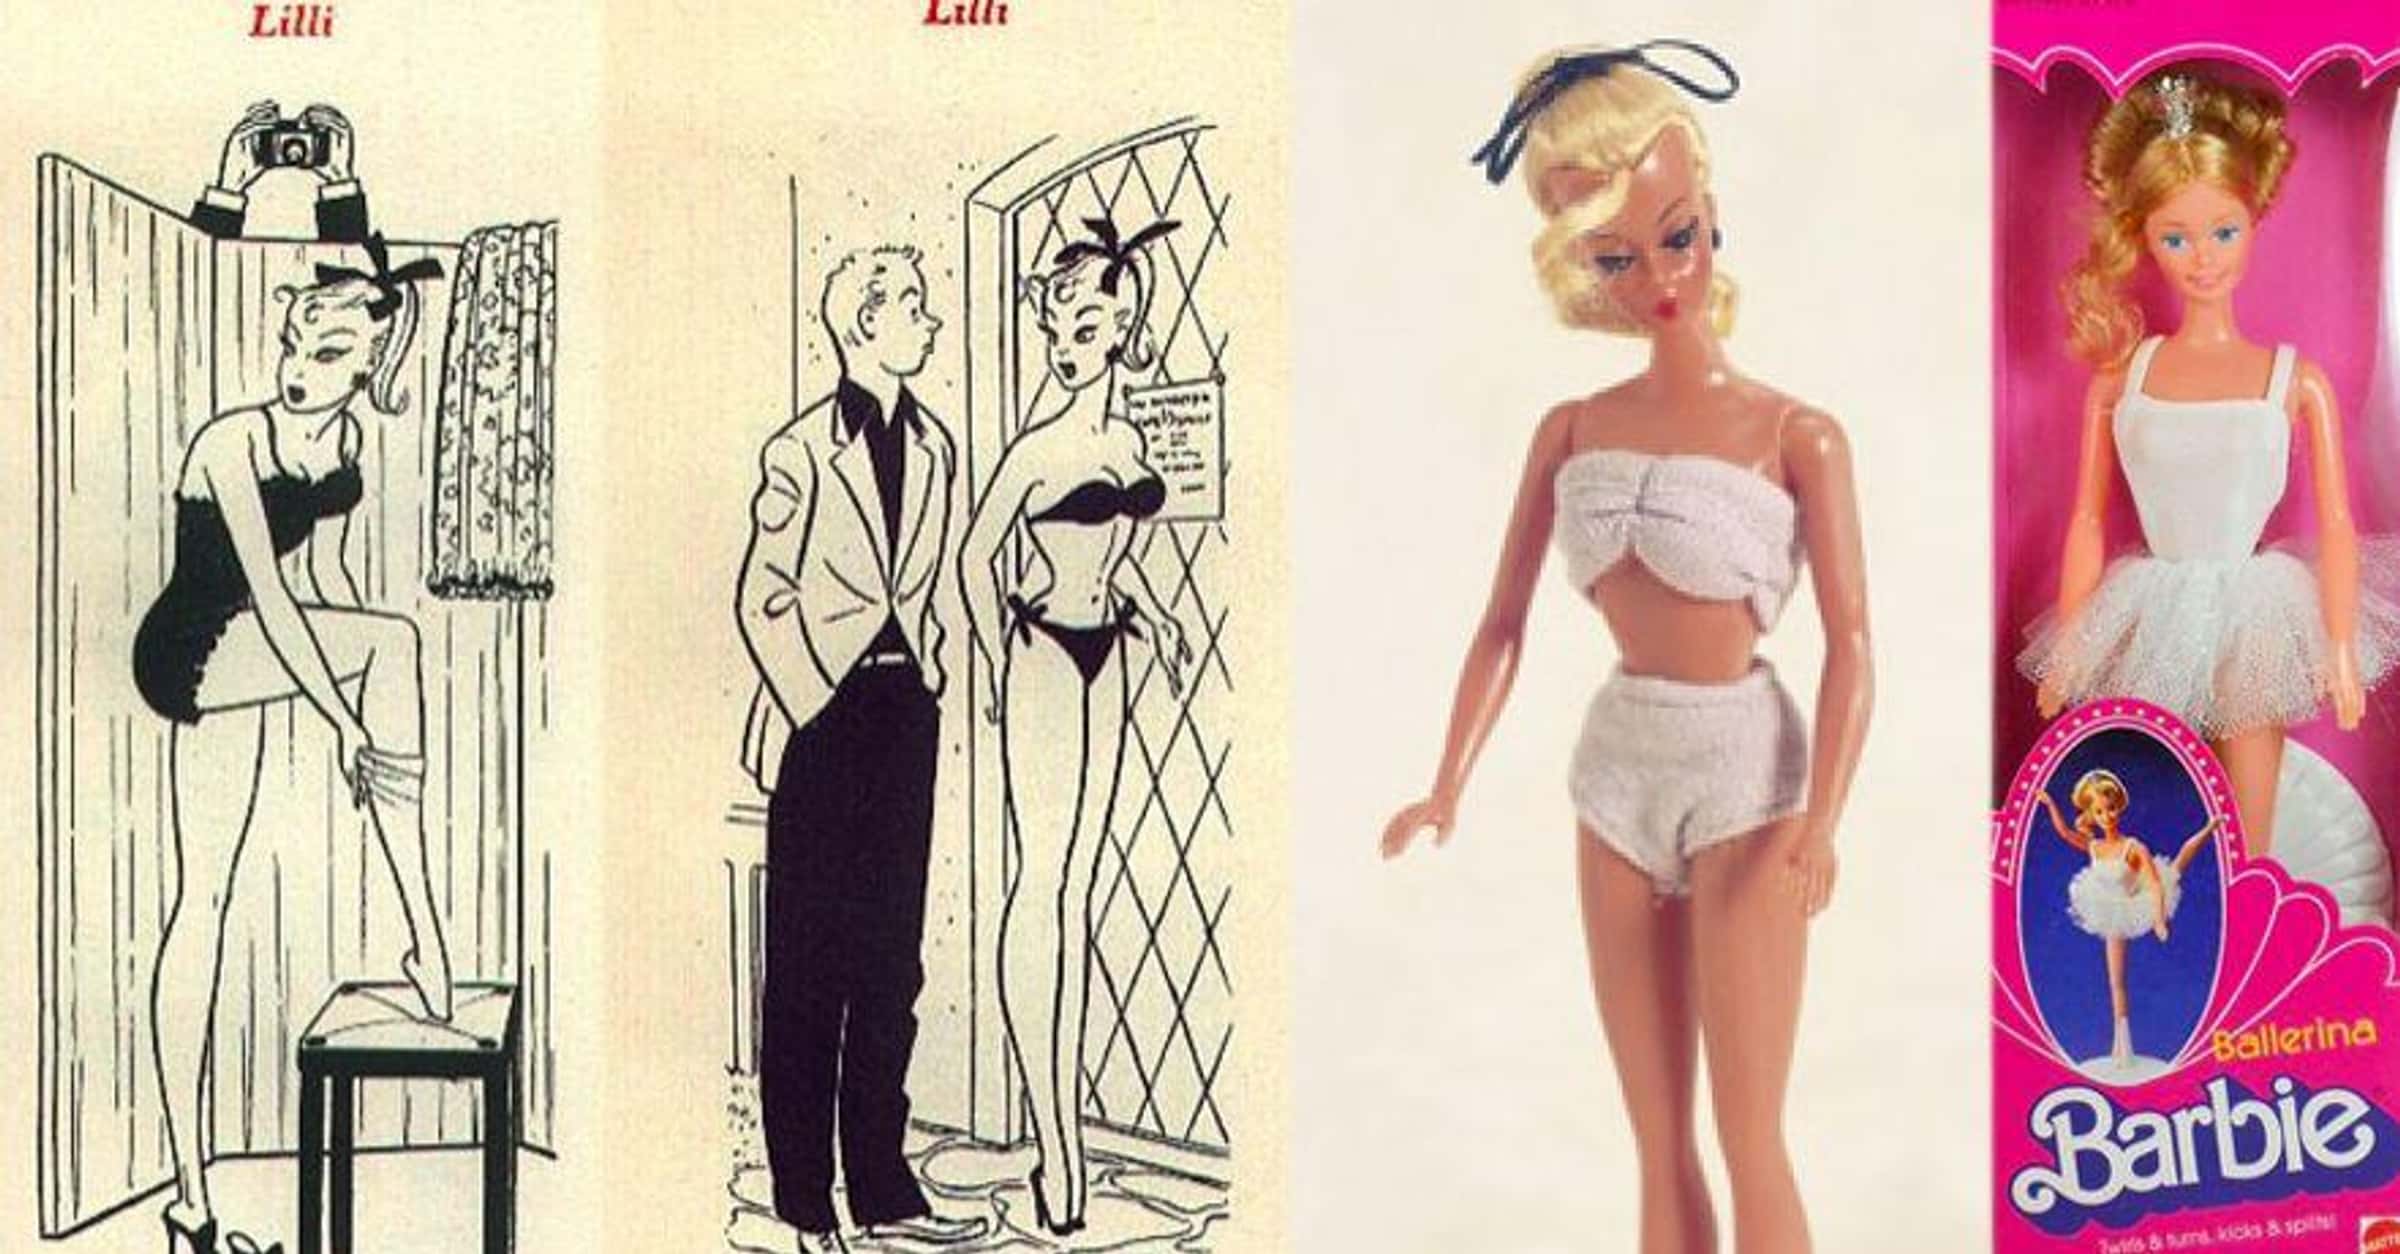 Antologi Hvis Fritagelse Barbie Was Originally Based On Risqué German Doll Named Bild Lilli